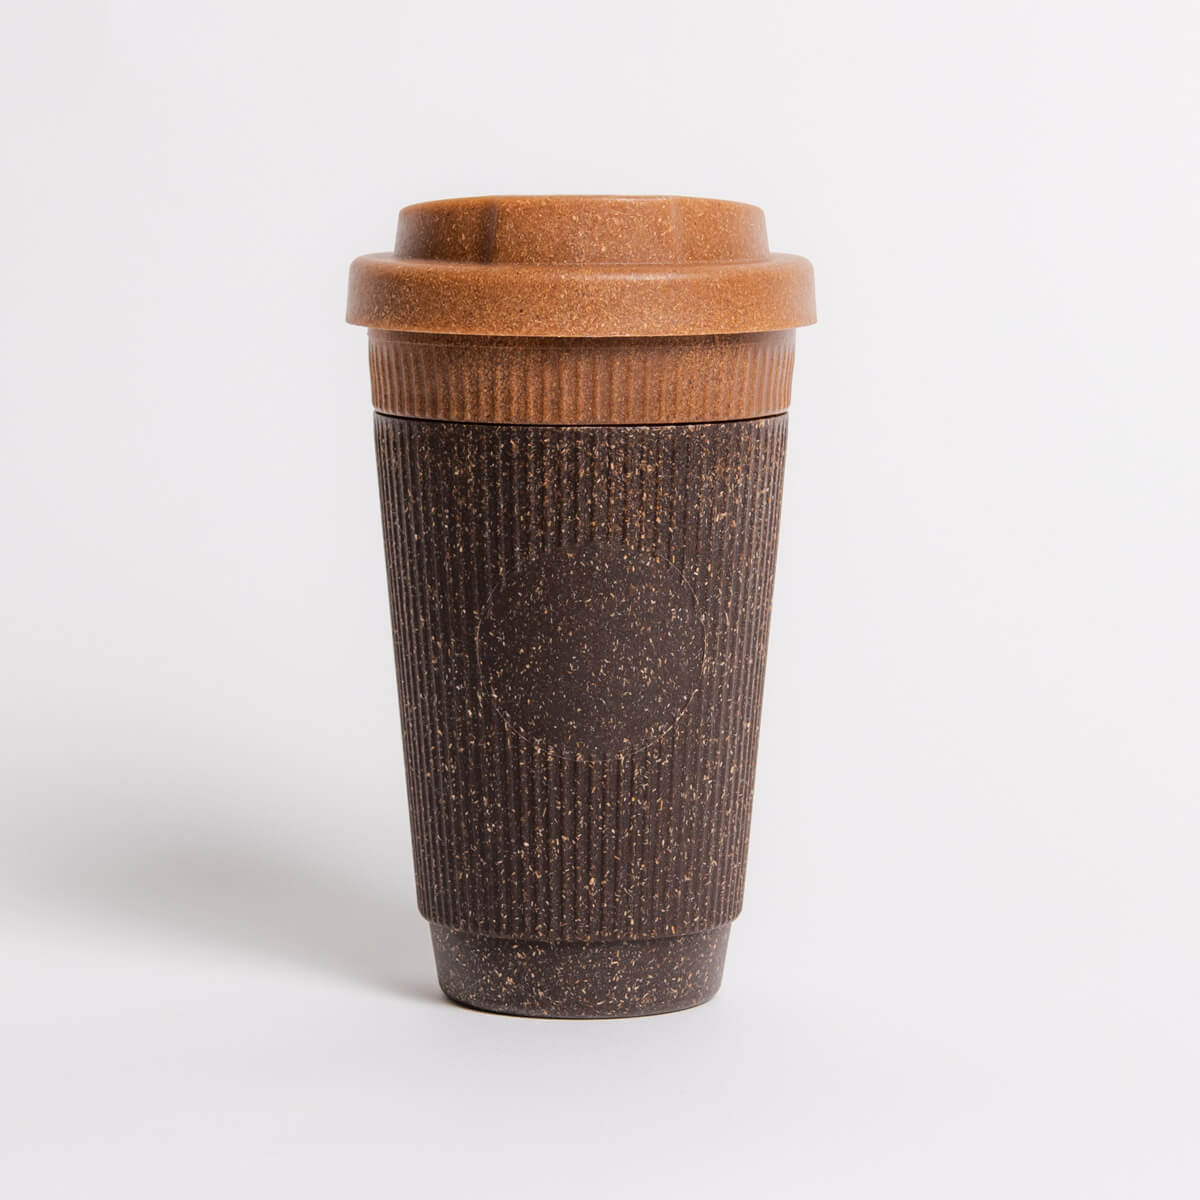 Freisteller Weducer Cup Refinded in Nutmeg von Kaffeeform